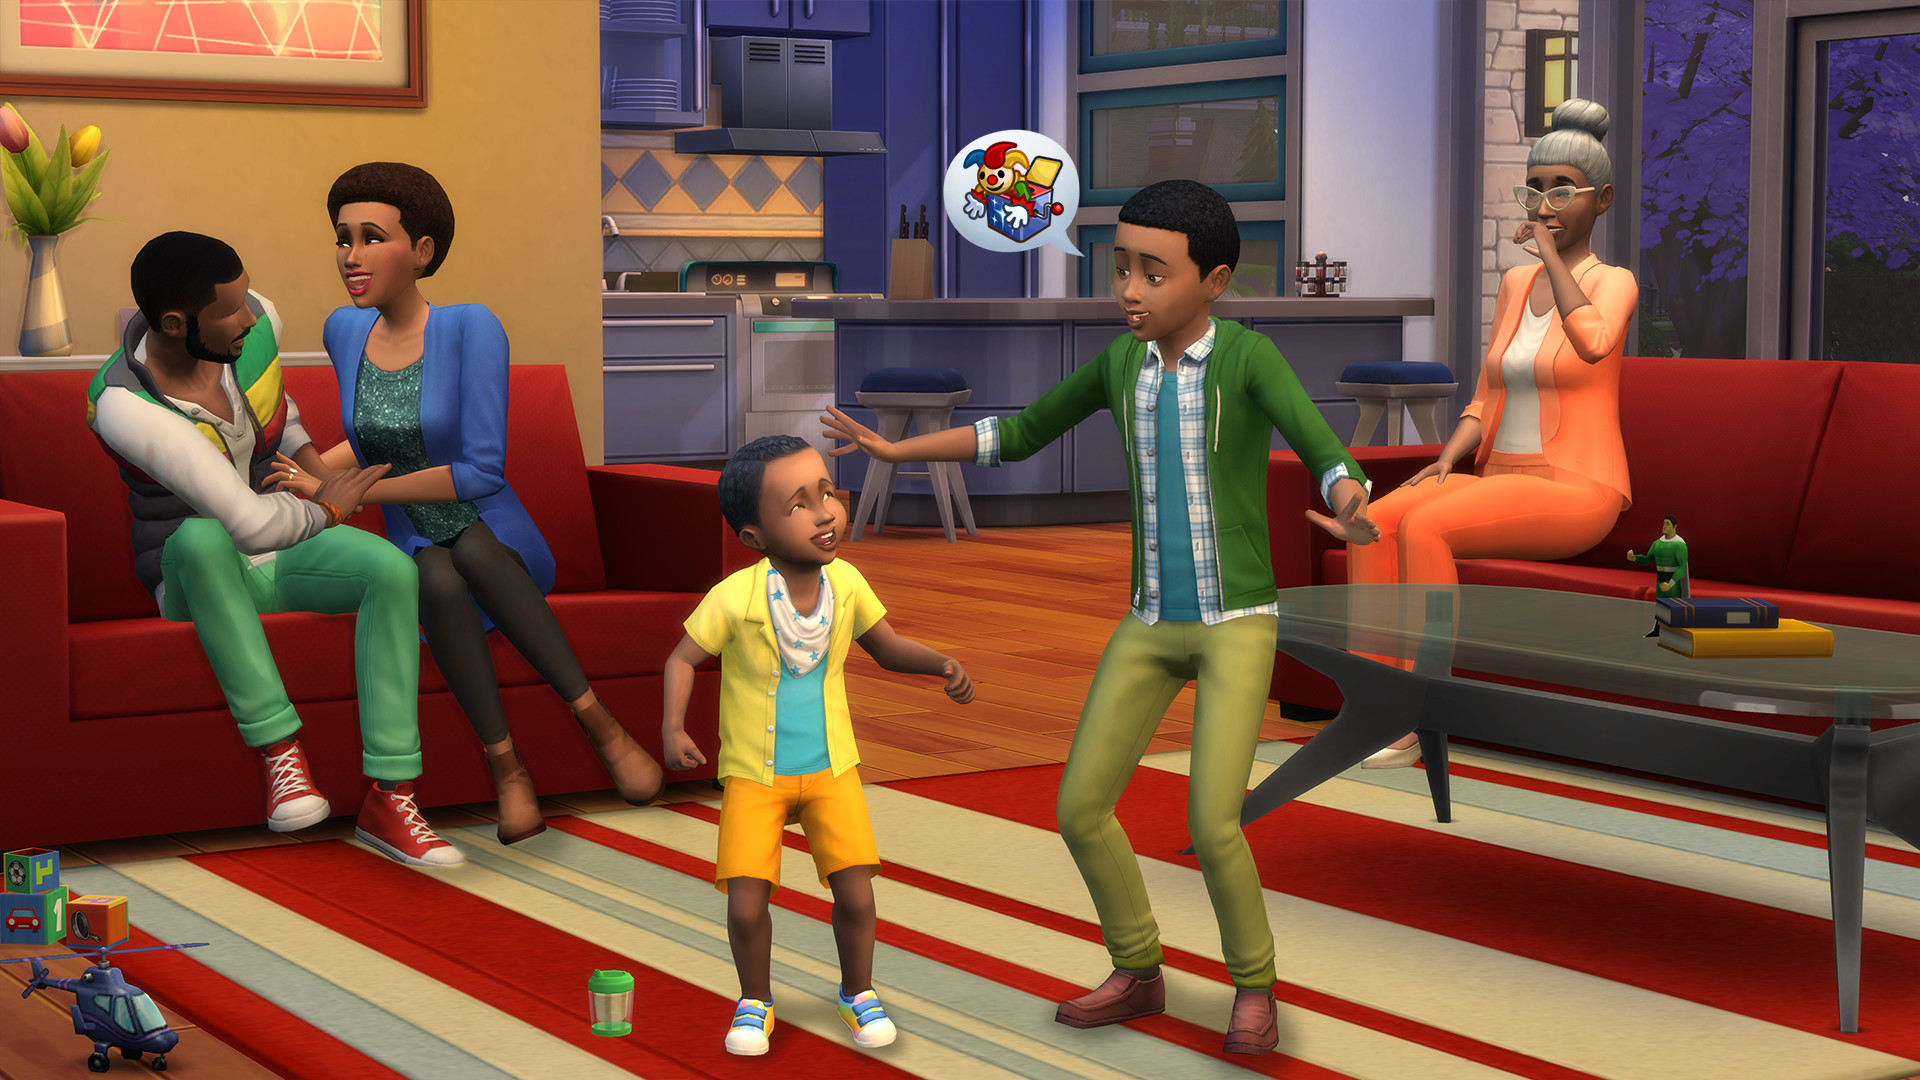 Групповой секс персонажей The Sims 4 во время домашней вечеринки